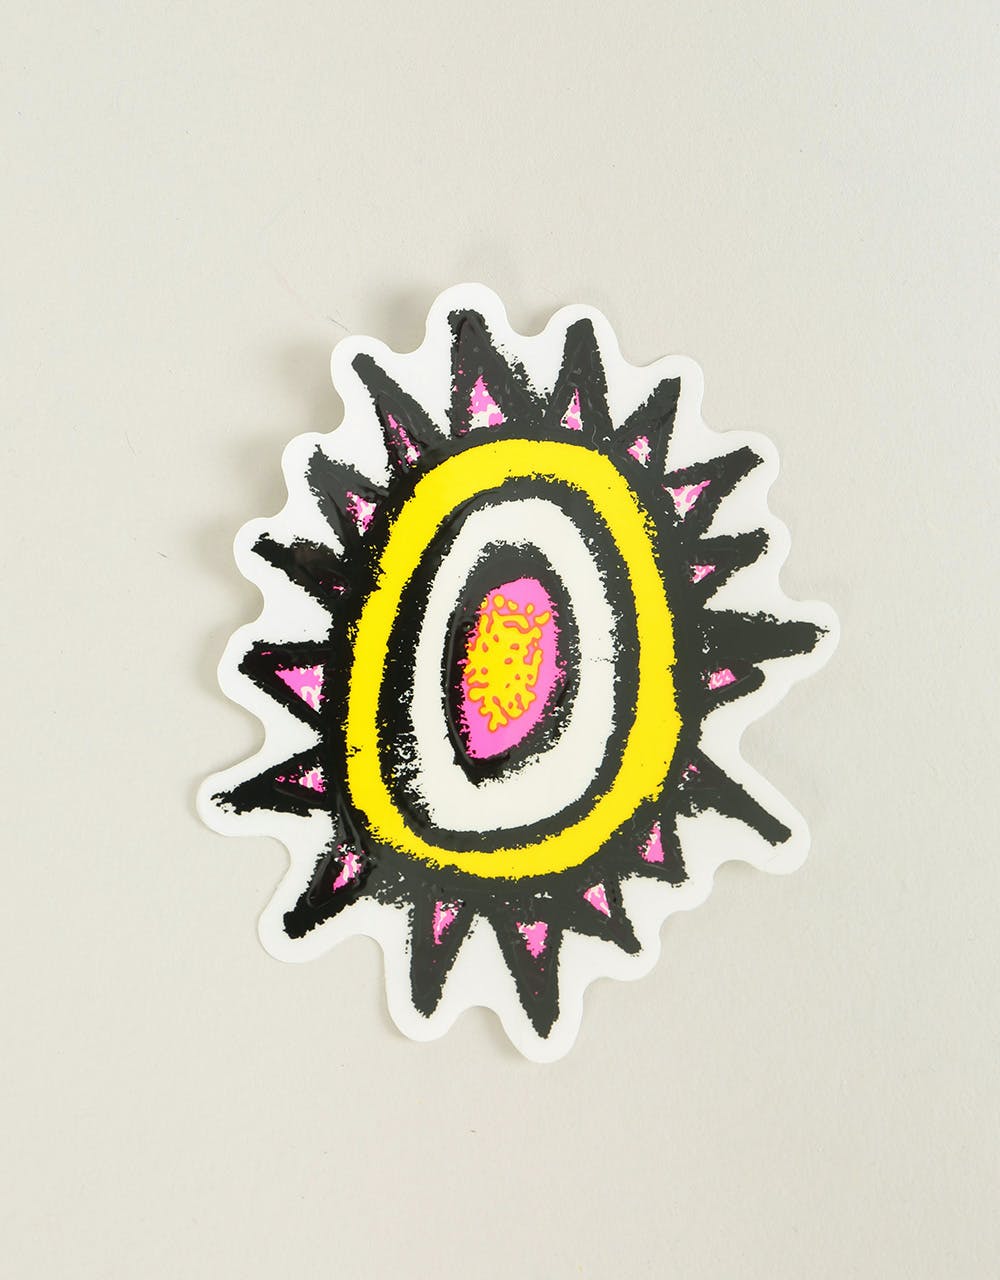 The New Deal Sun Sticker